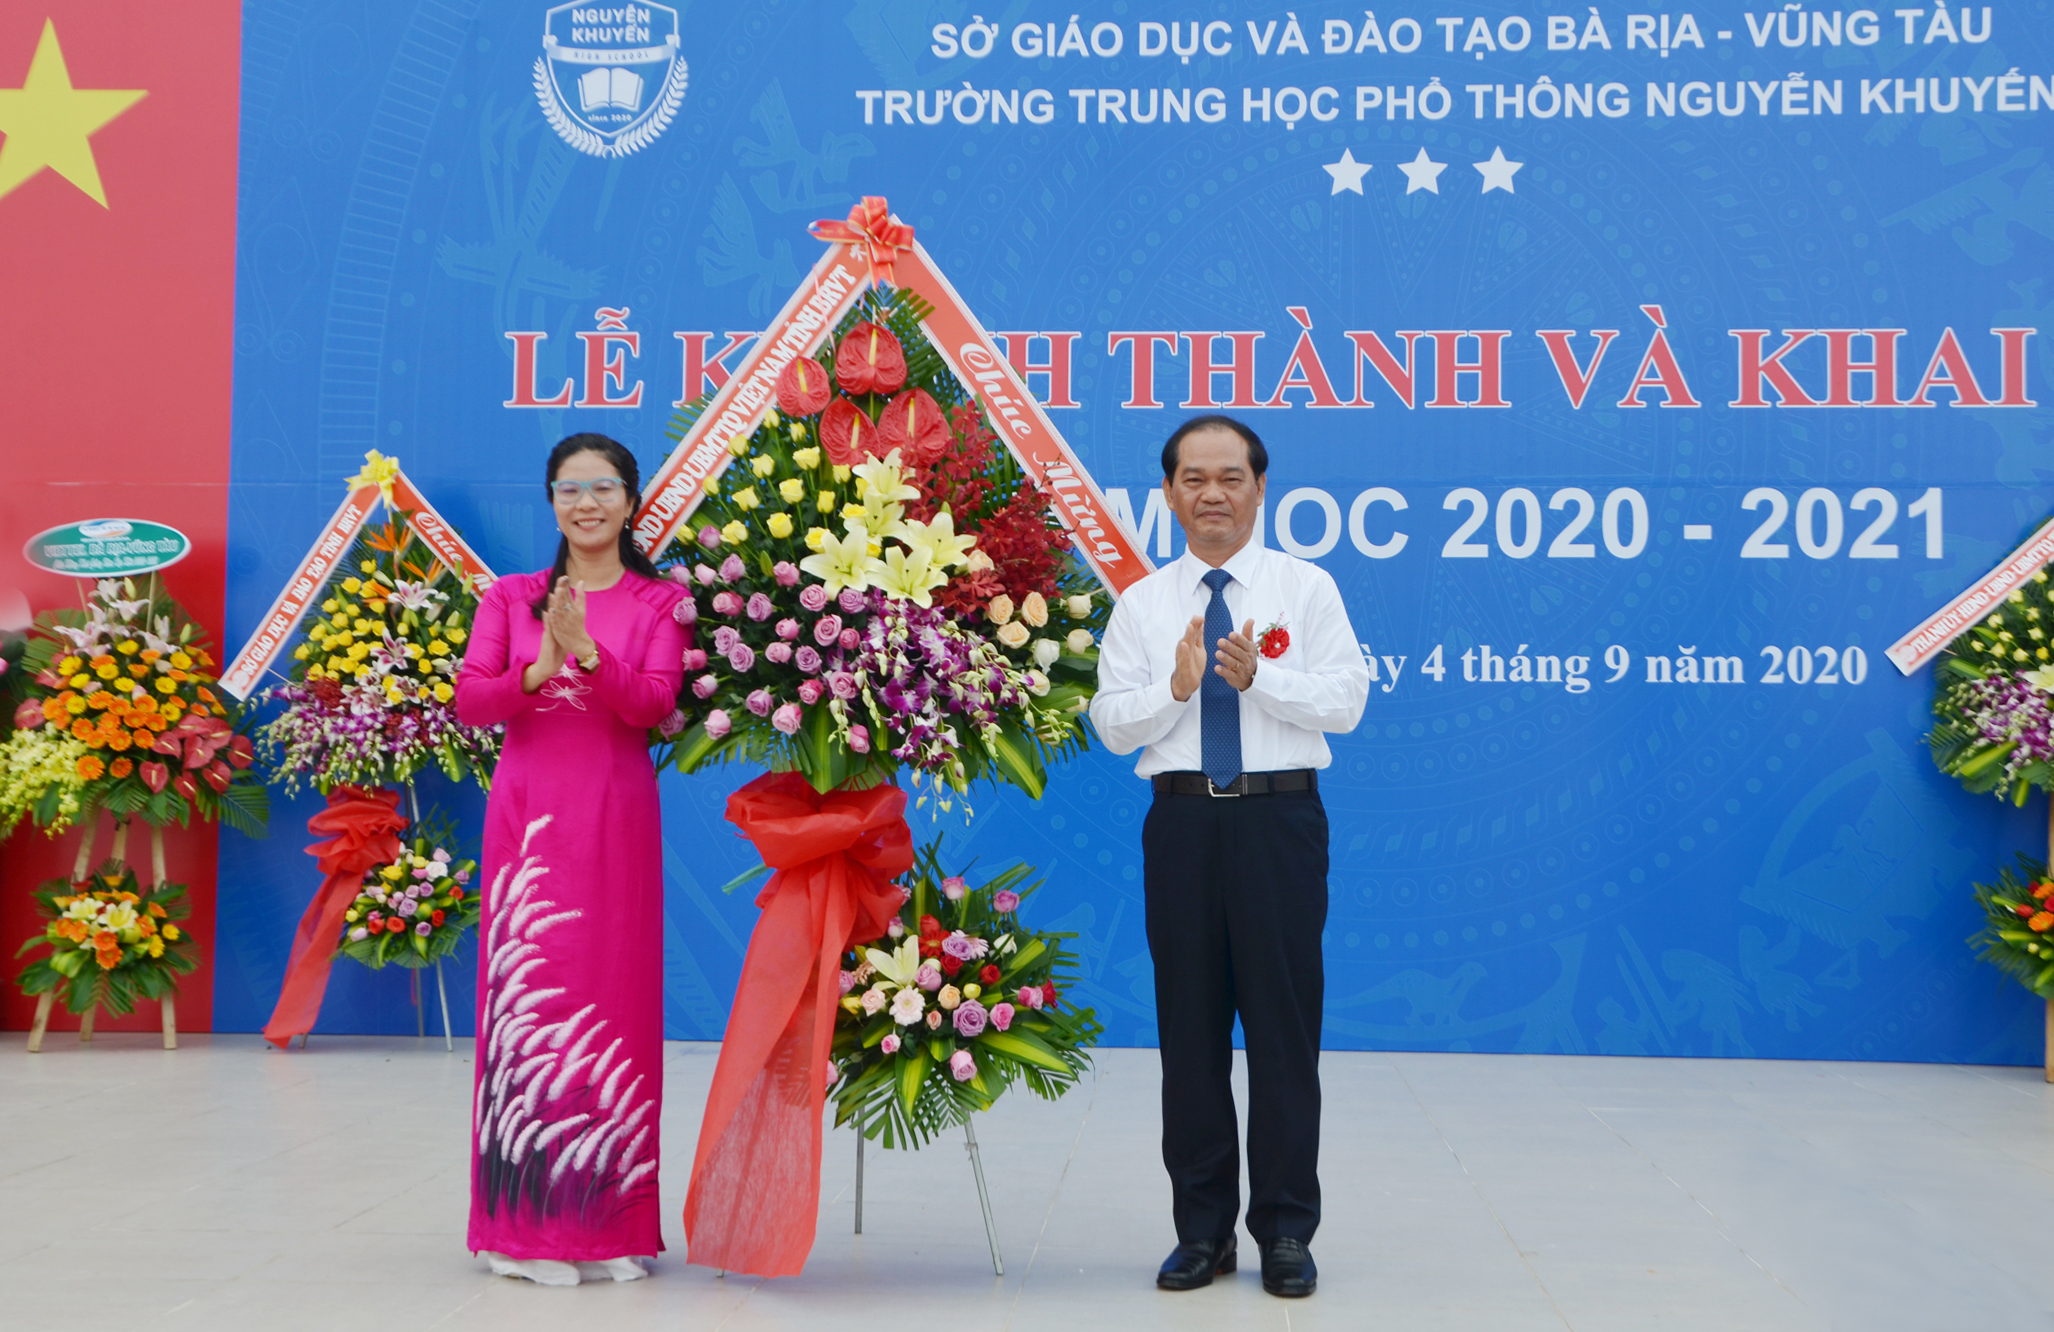 Ông Mai Ngọc Thuận, Ủy viên Ban Thường vụ Tỉnh ủy, Phó Chủ tịch HĐND tỉnh tặng hoa chúc mừng Trường THPT Nguyễn Khuyến.